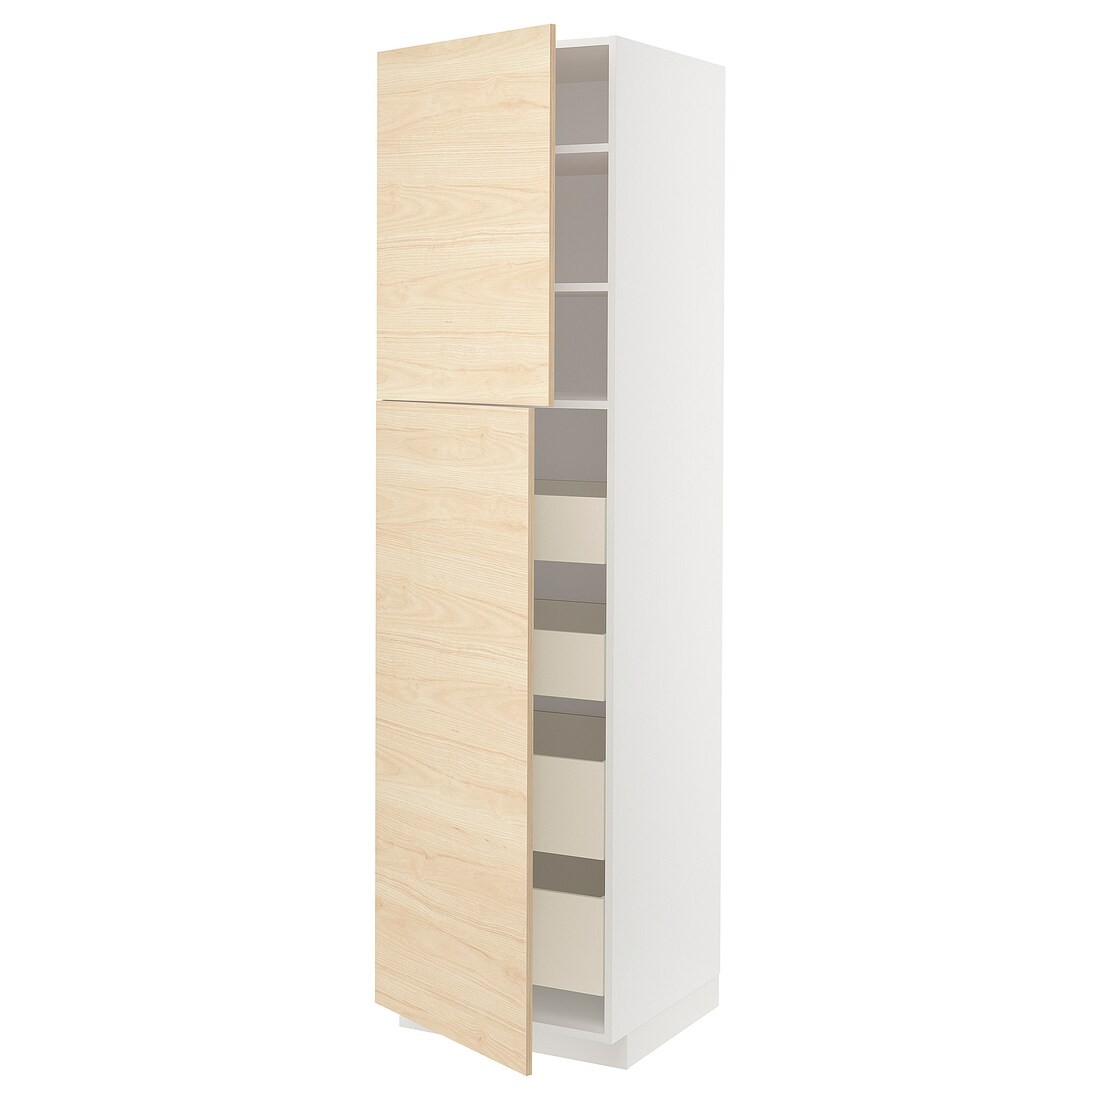 IKEA METOD МЕТОД / MAXIMERA МАКСИМЕРА Шкаф высокий 2 двери / 4 ящика, белый / Askersund узор светлый ясень, 60x60x220 см 99465991 | 994.659.91